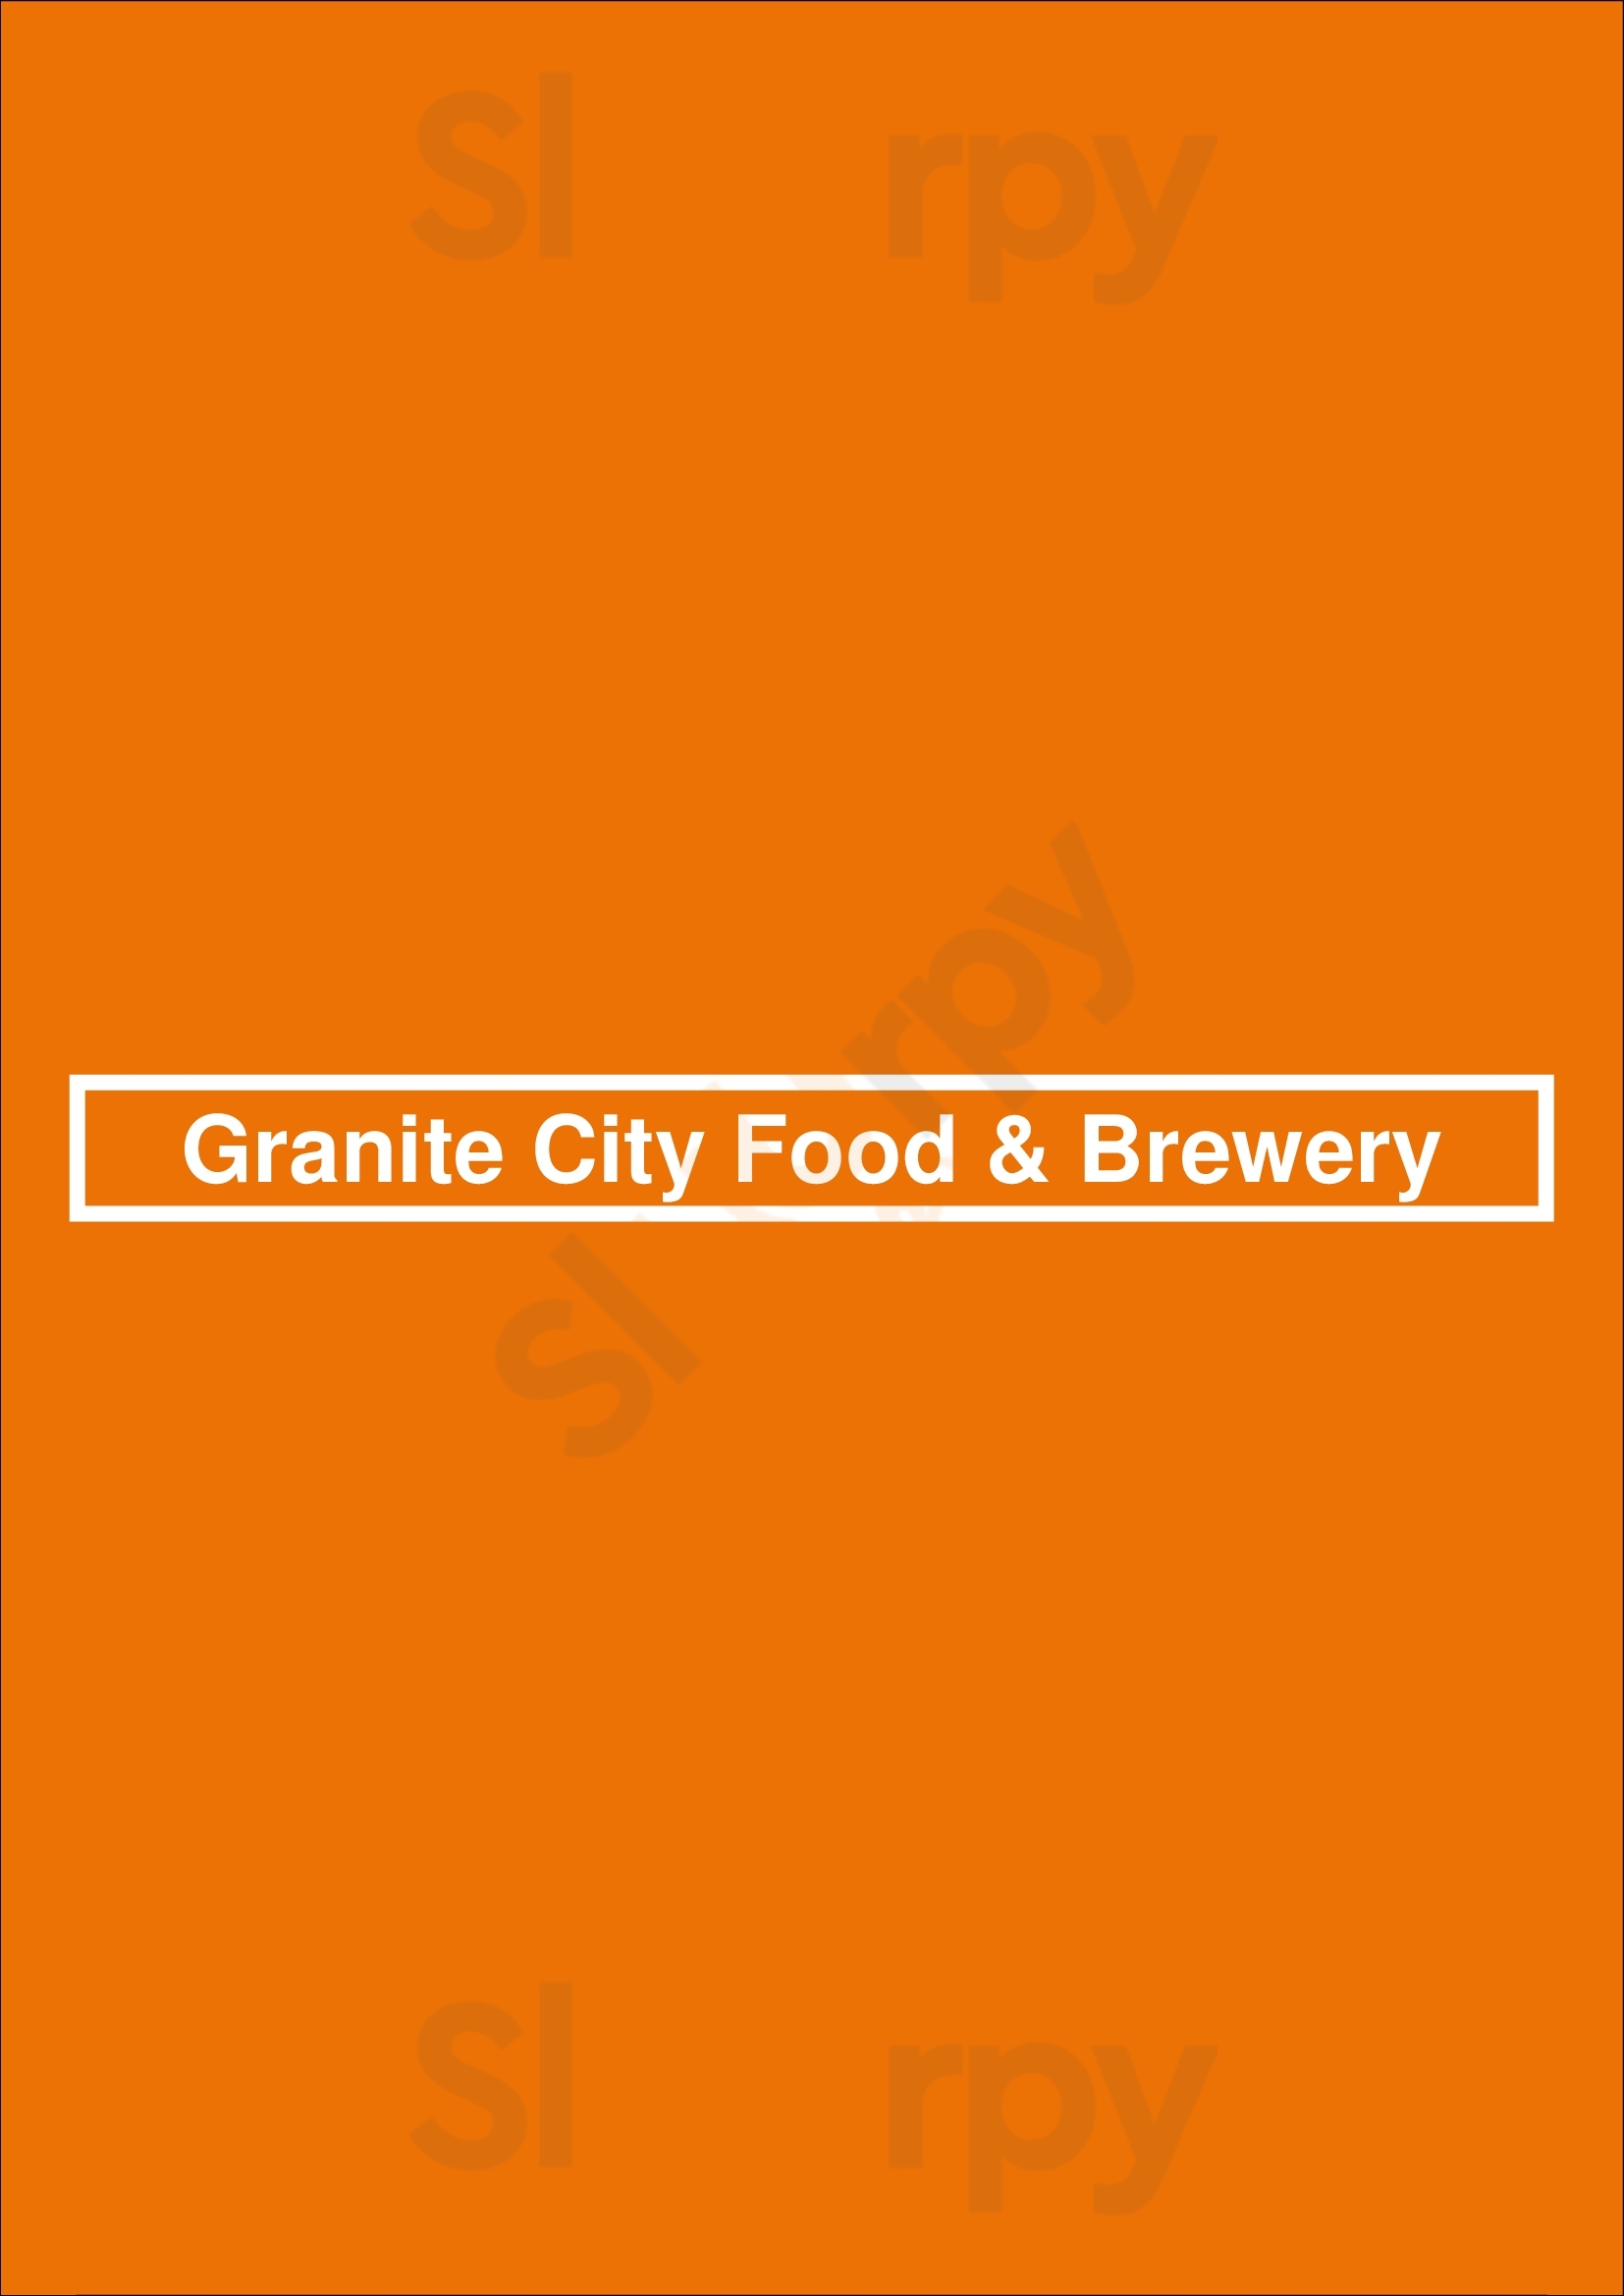 Granite City Food & Brewery Kansas City Menu - 1